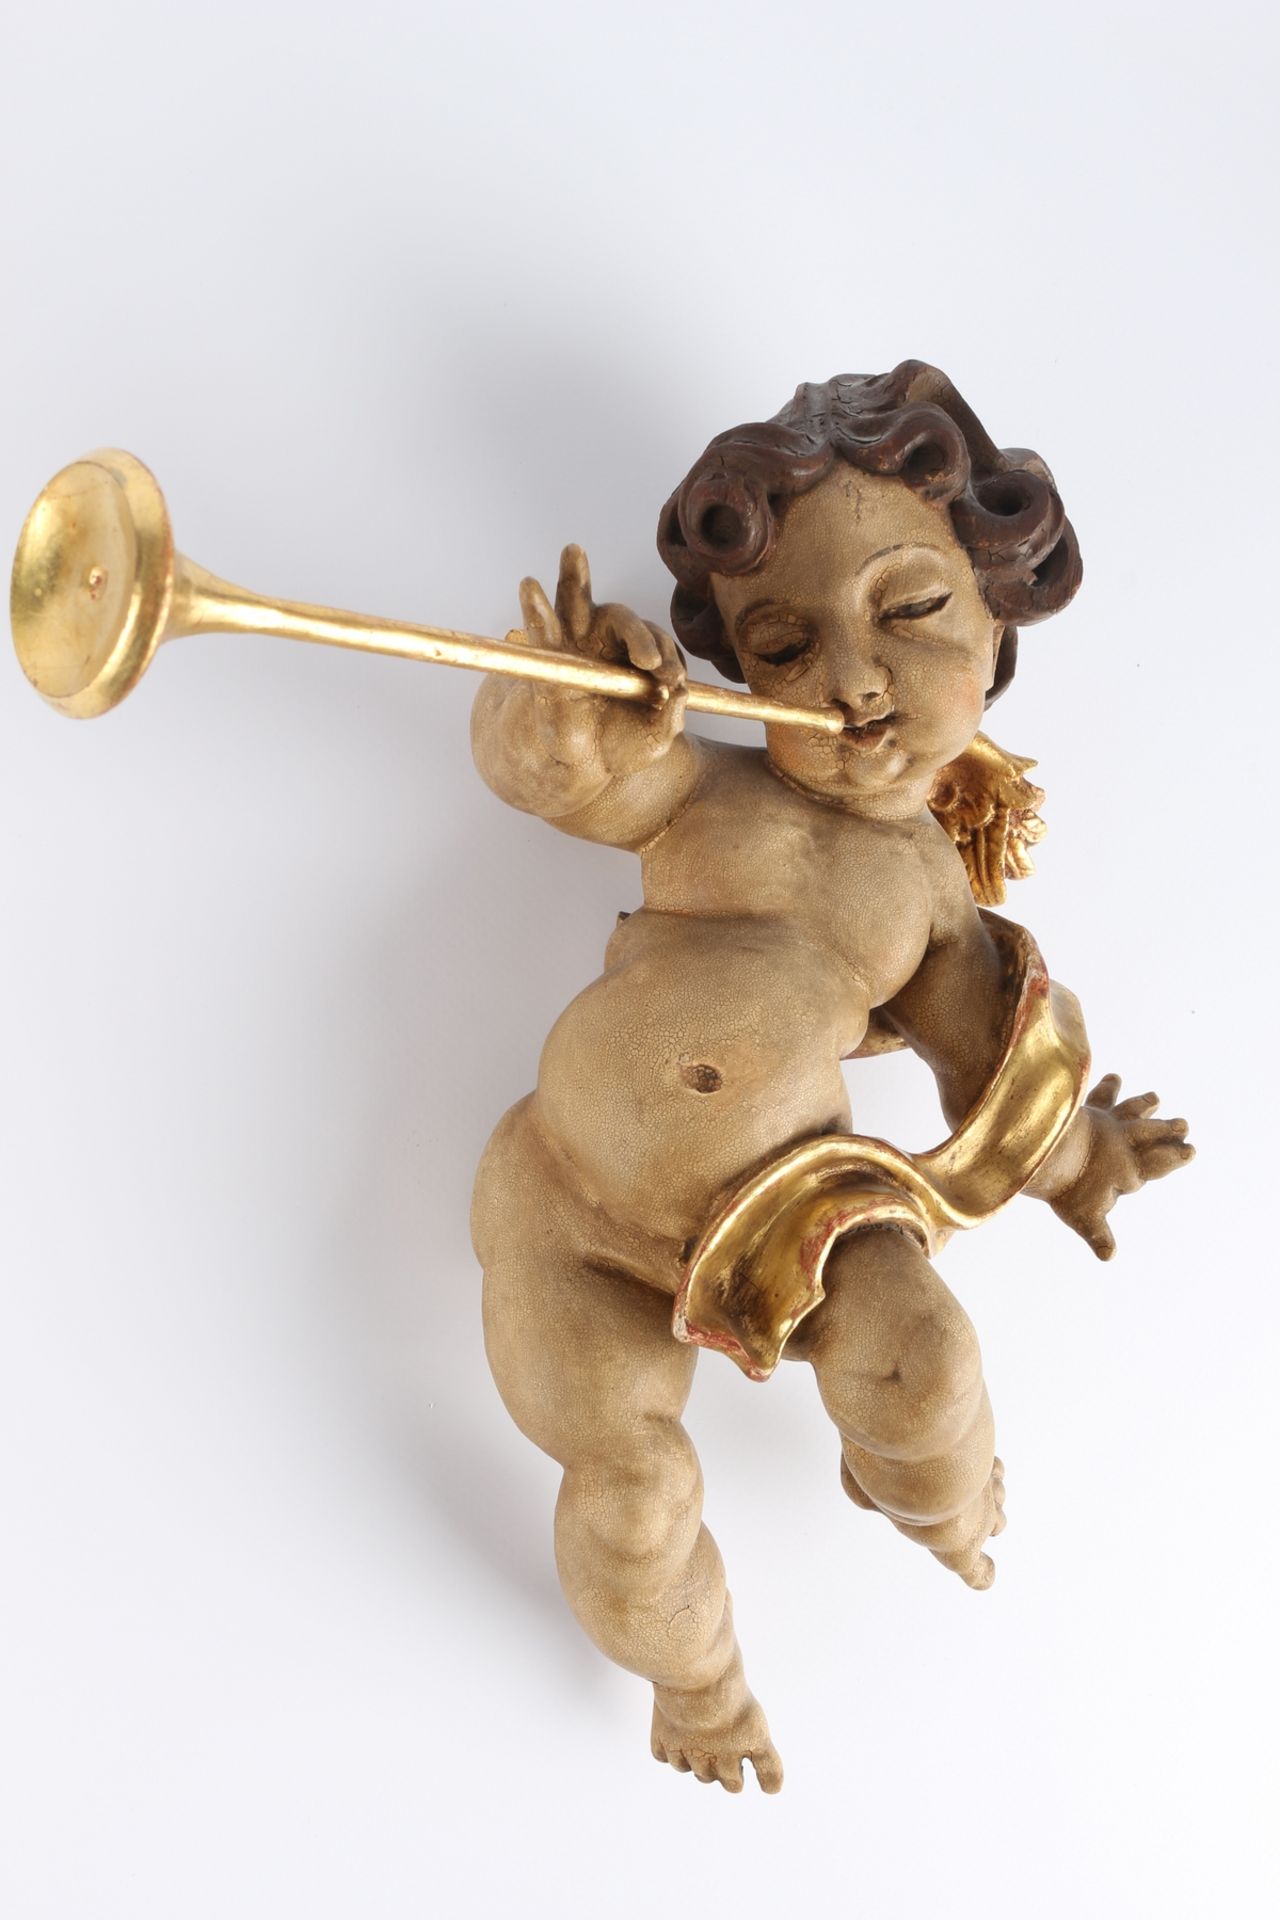 Paar Posaunen - Putten, pair of trombones putti, - Image 3 of 4